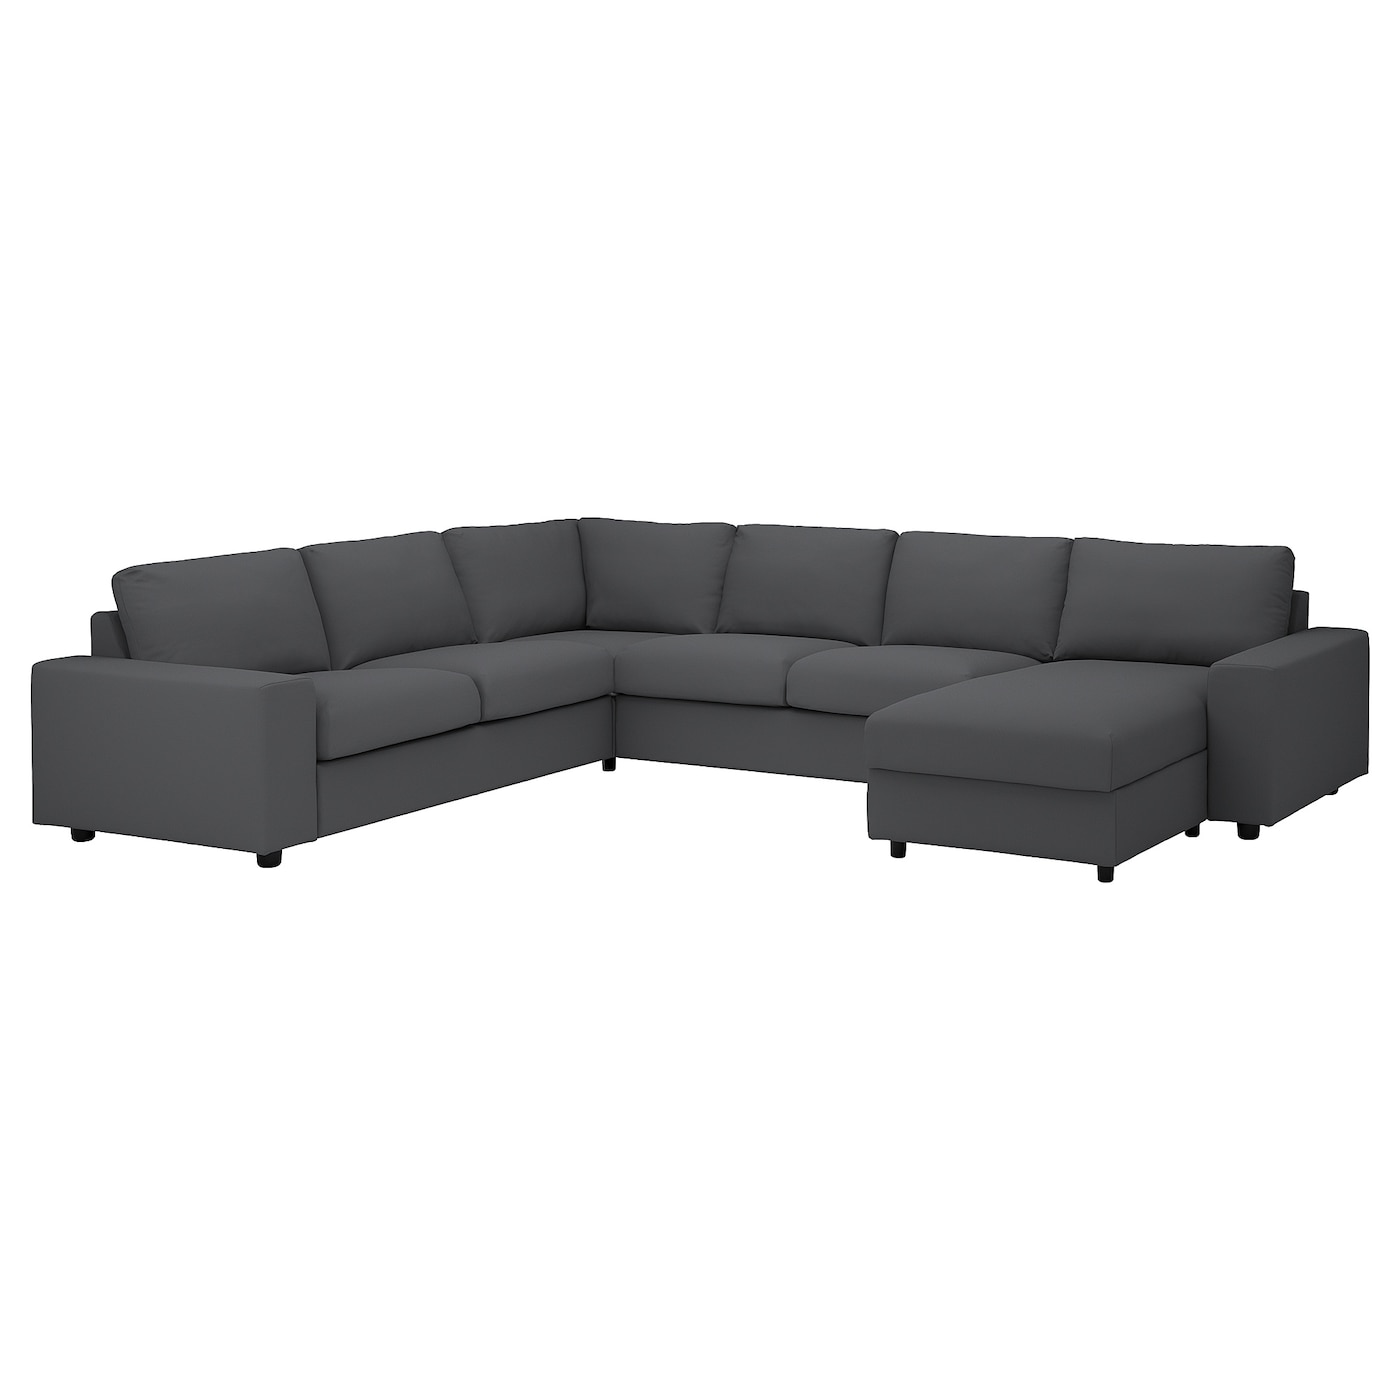 ВИМЛЕ Диван угловой, 5-местный. диван+диван, с широкими подлокотниками/Халларп серый VIMLE IKEA диван угловой диван ру ройн мини velvet smoke